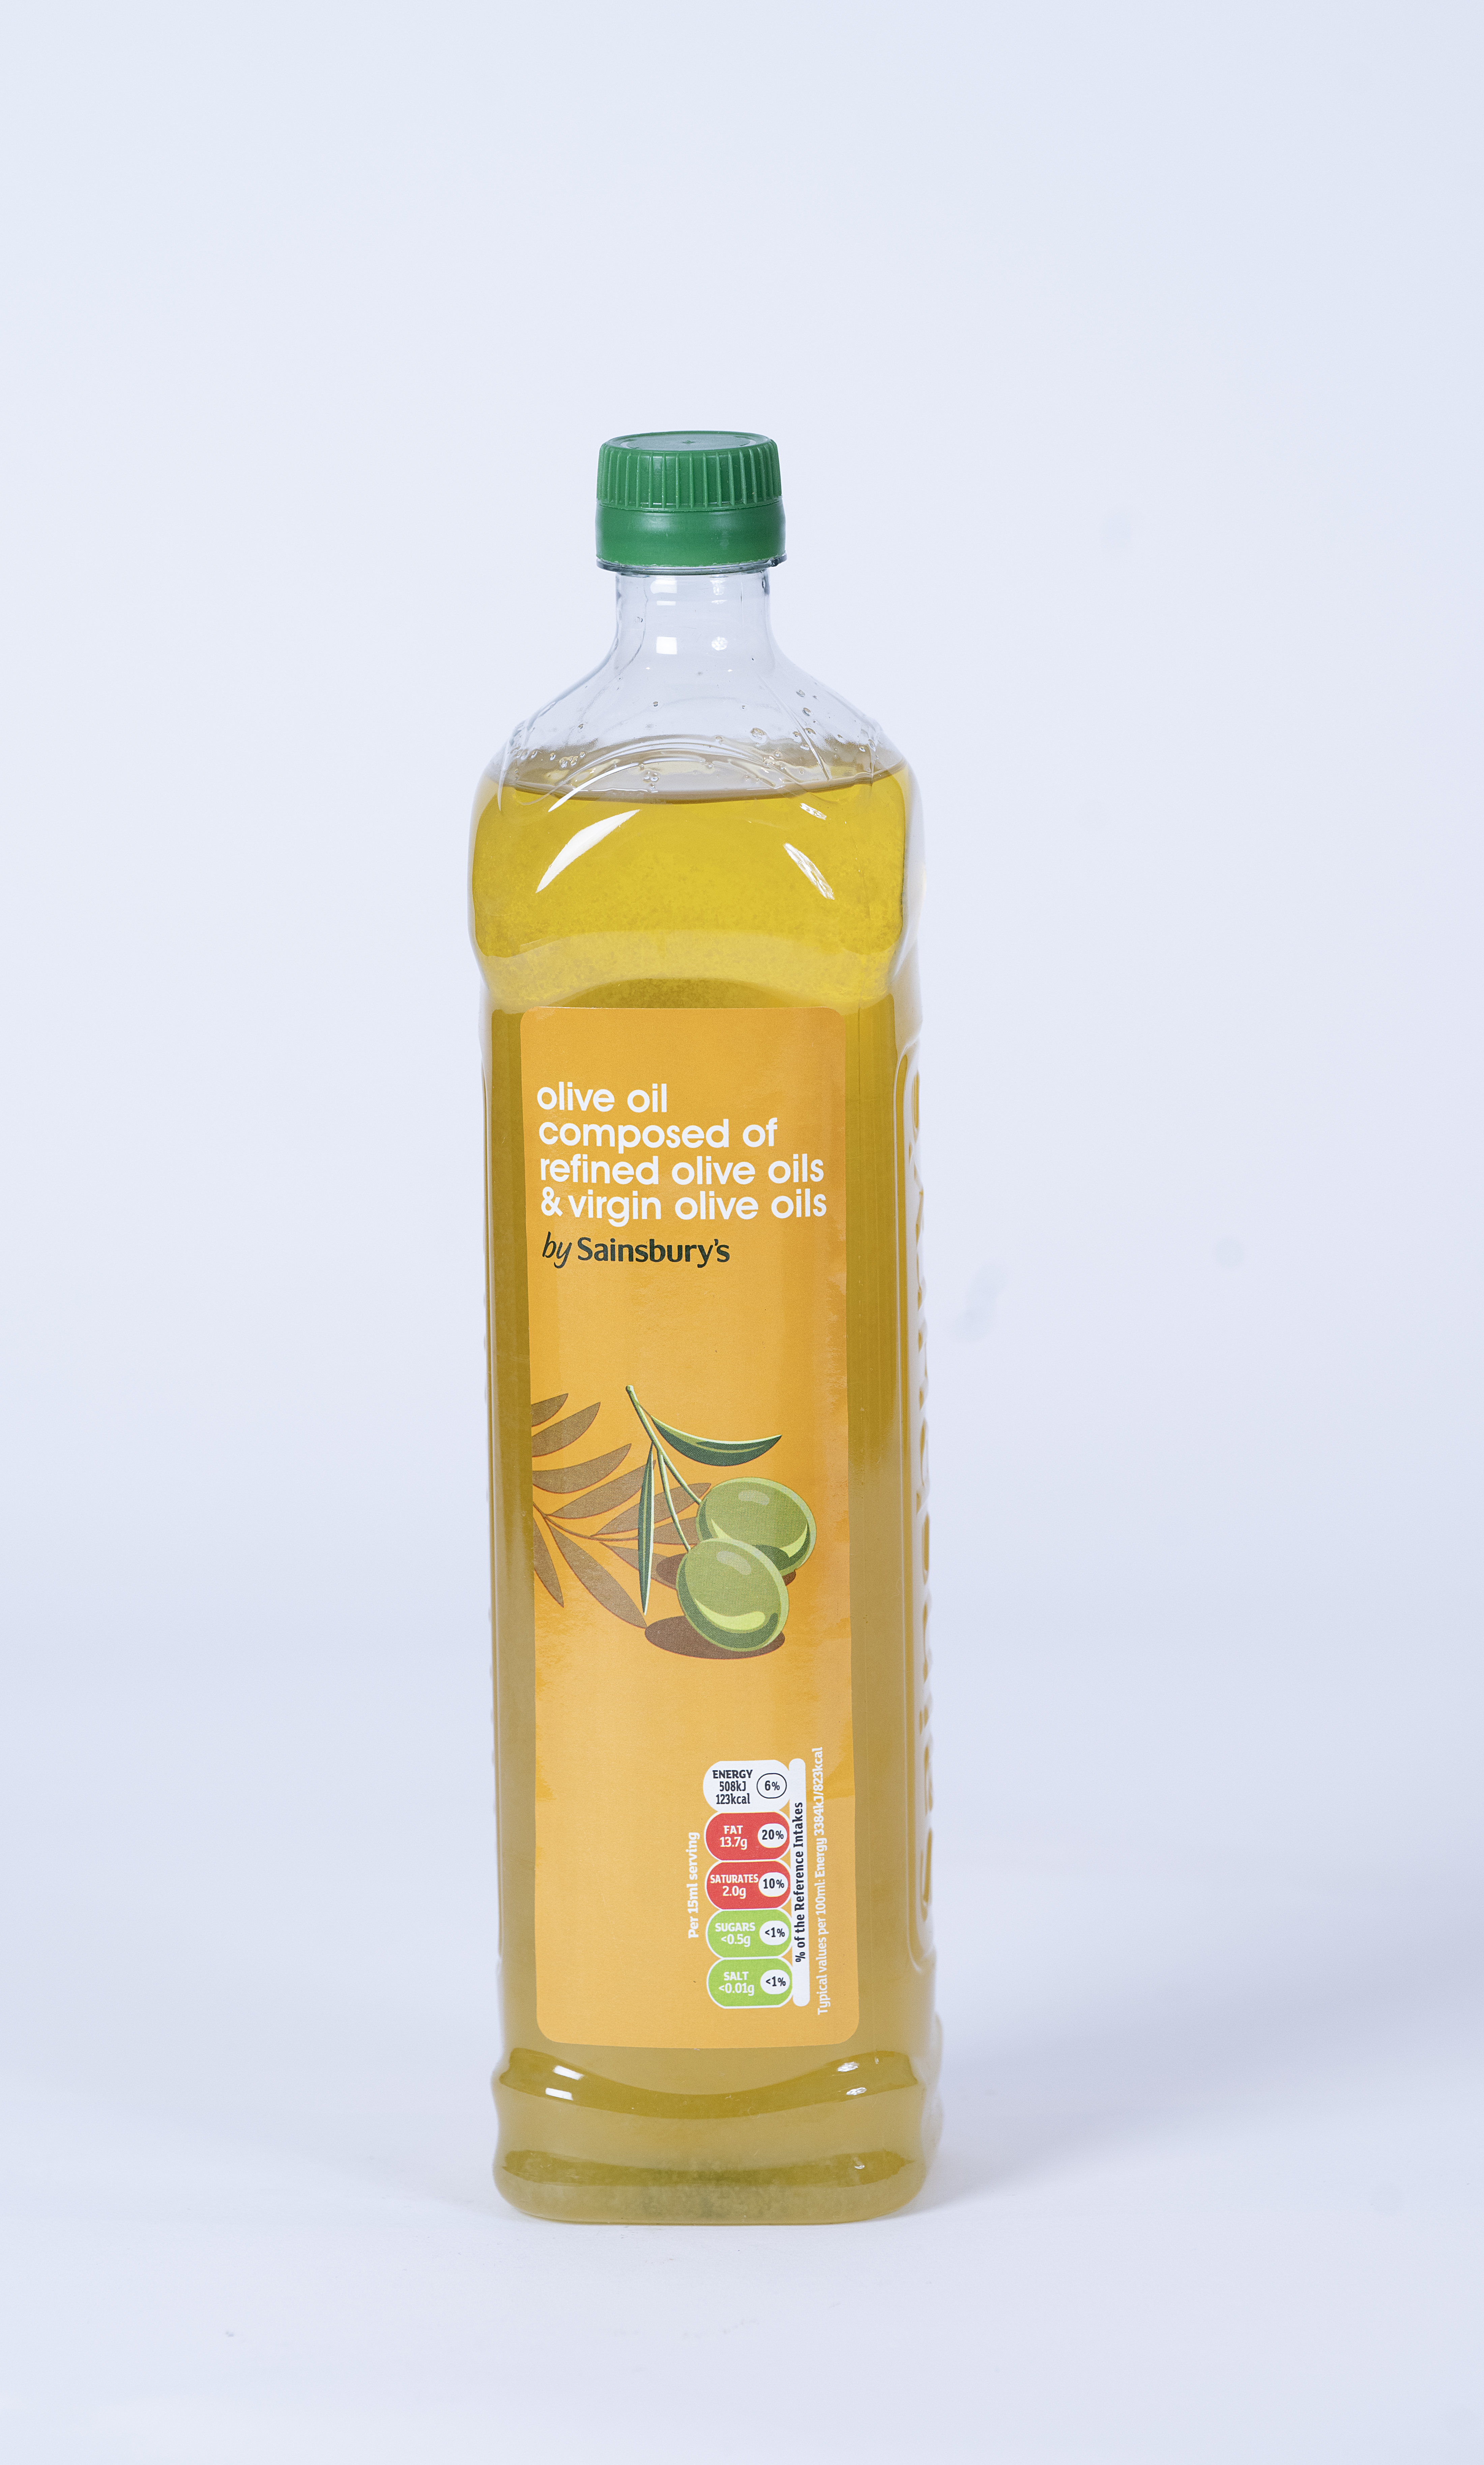 Sainsbury's olive oil had a pleasant natural taste